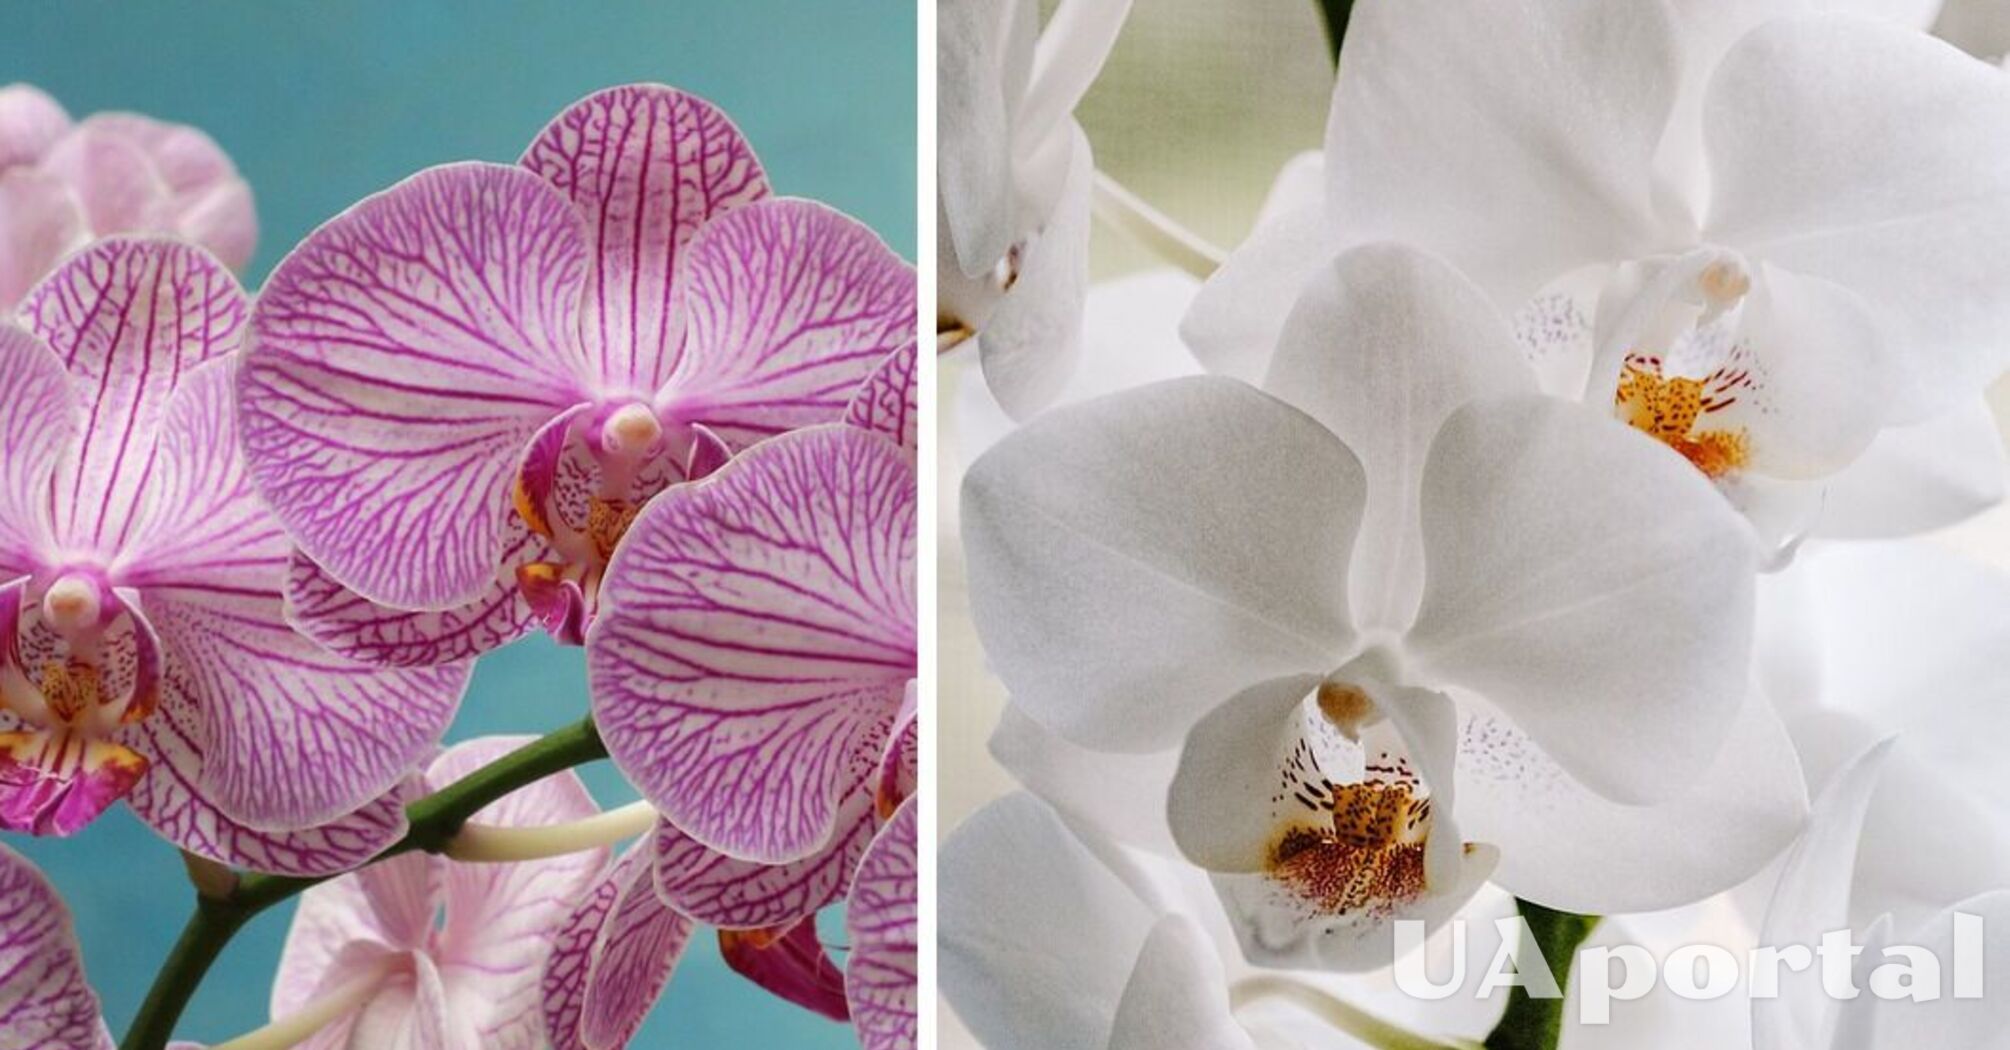 Забудьте о водопроводной воде: эксперты дали советы по уходу за орхидеей